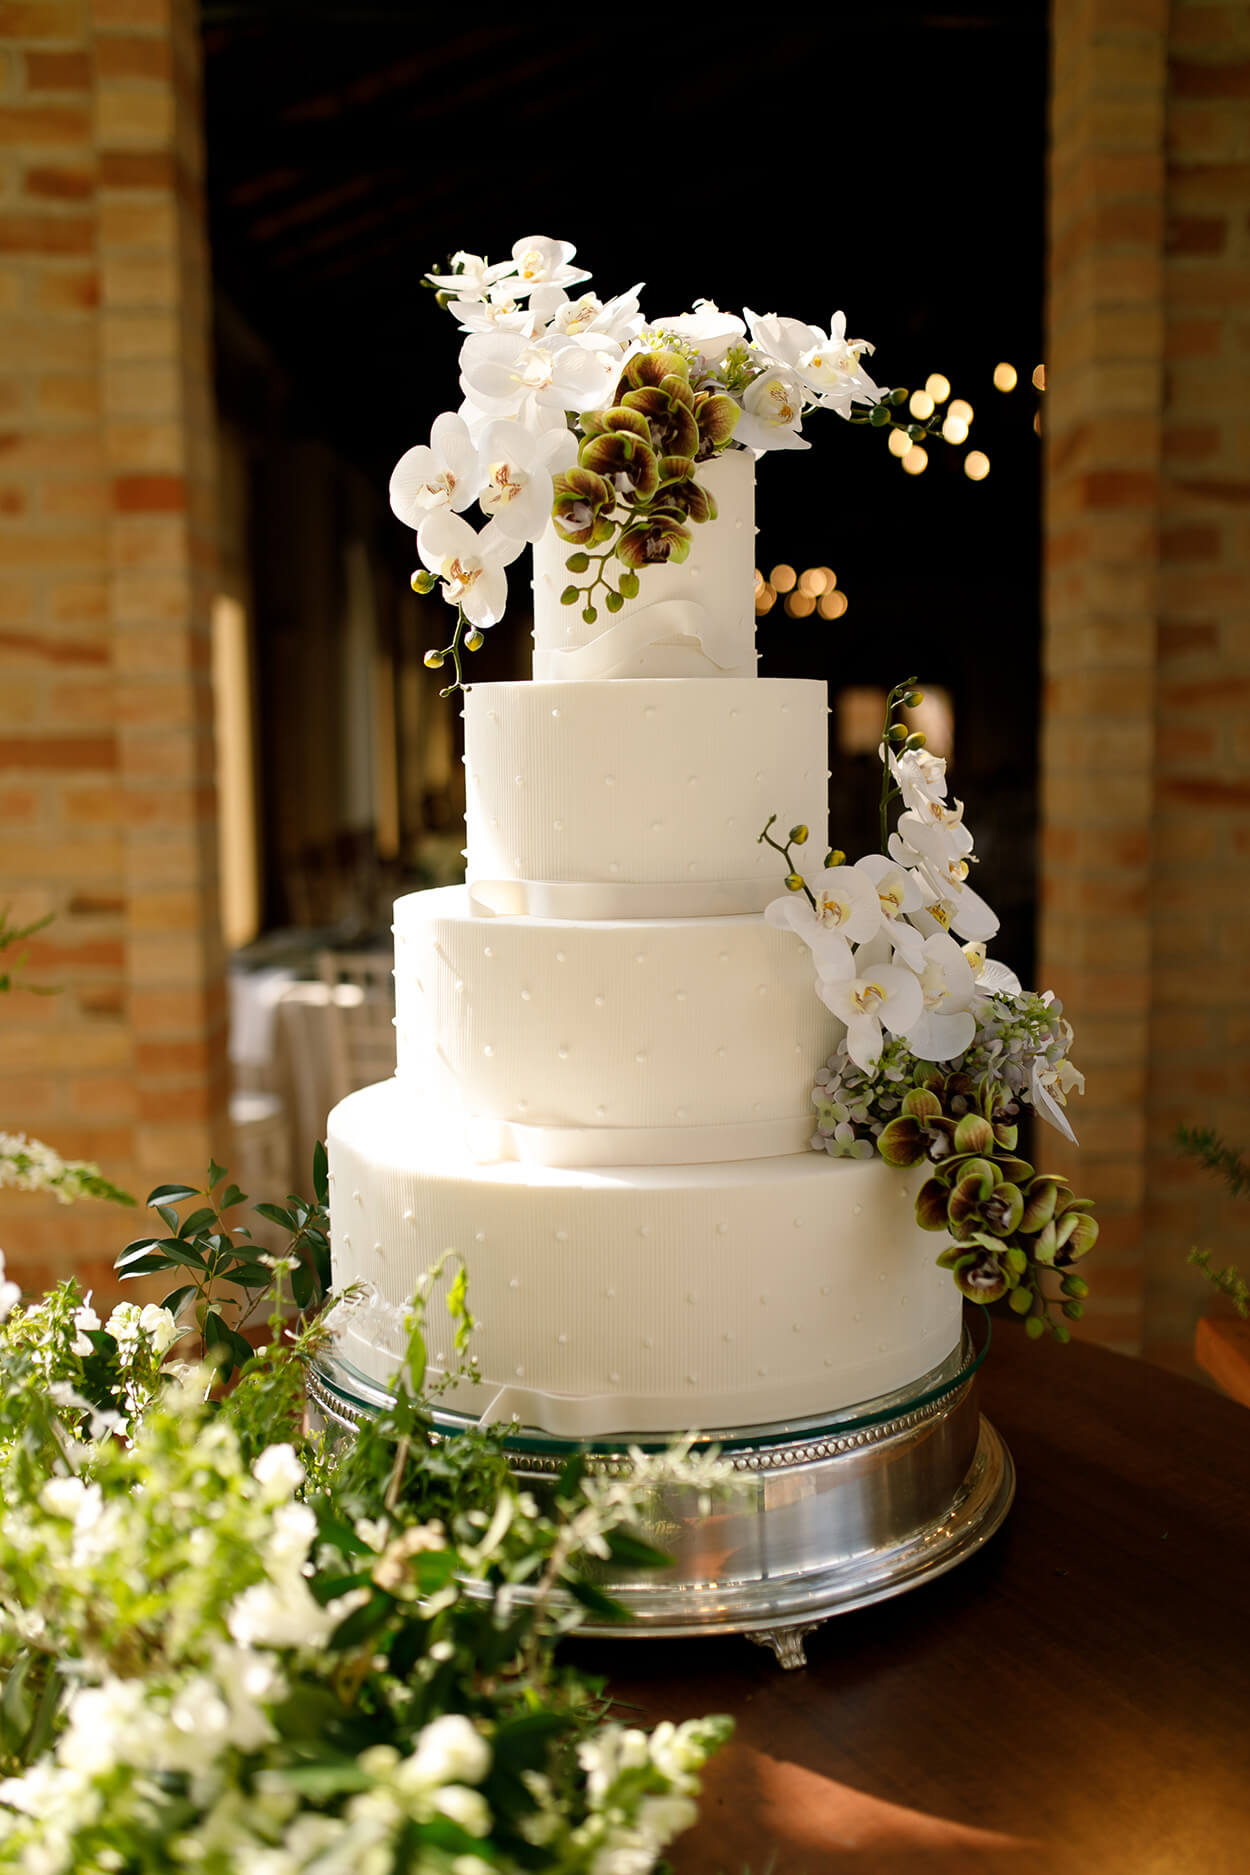 bolo de casamento com quatro andares brancos com aplicaçãod e mini pérolas e topo com orquídeas brancas e verdes